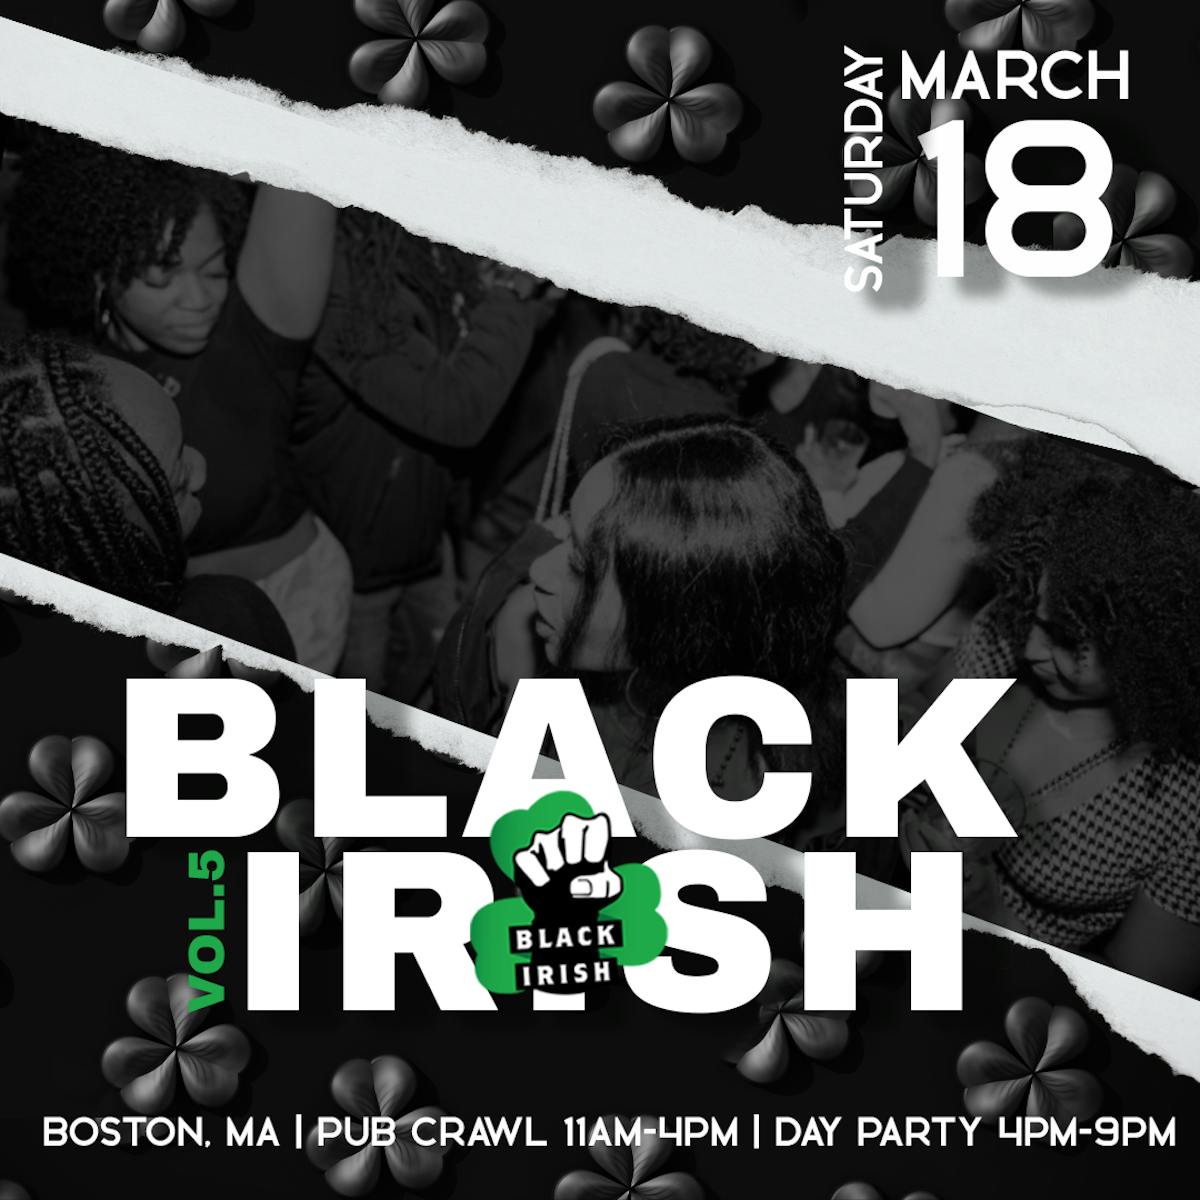 black irish bar crawl